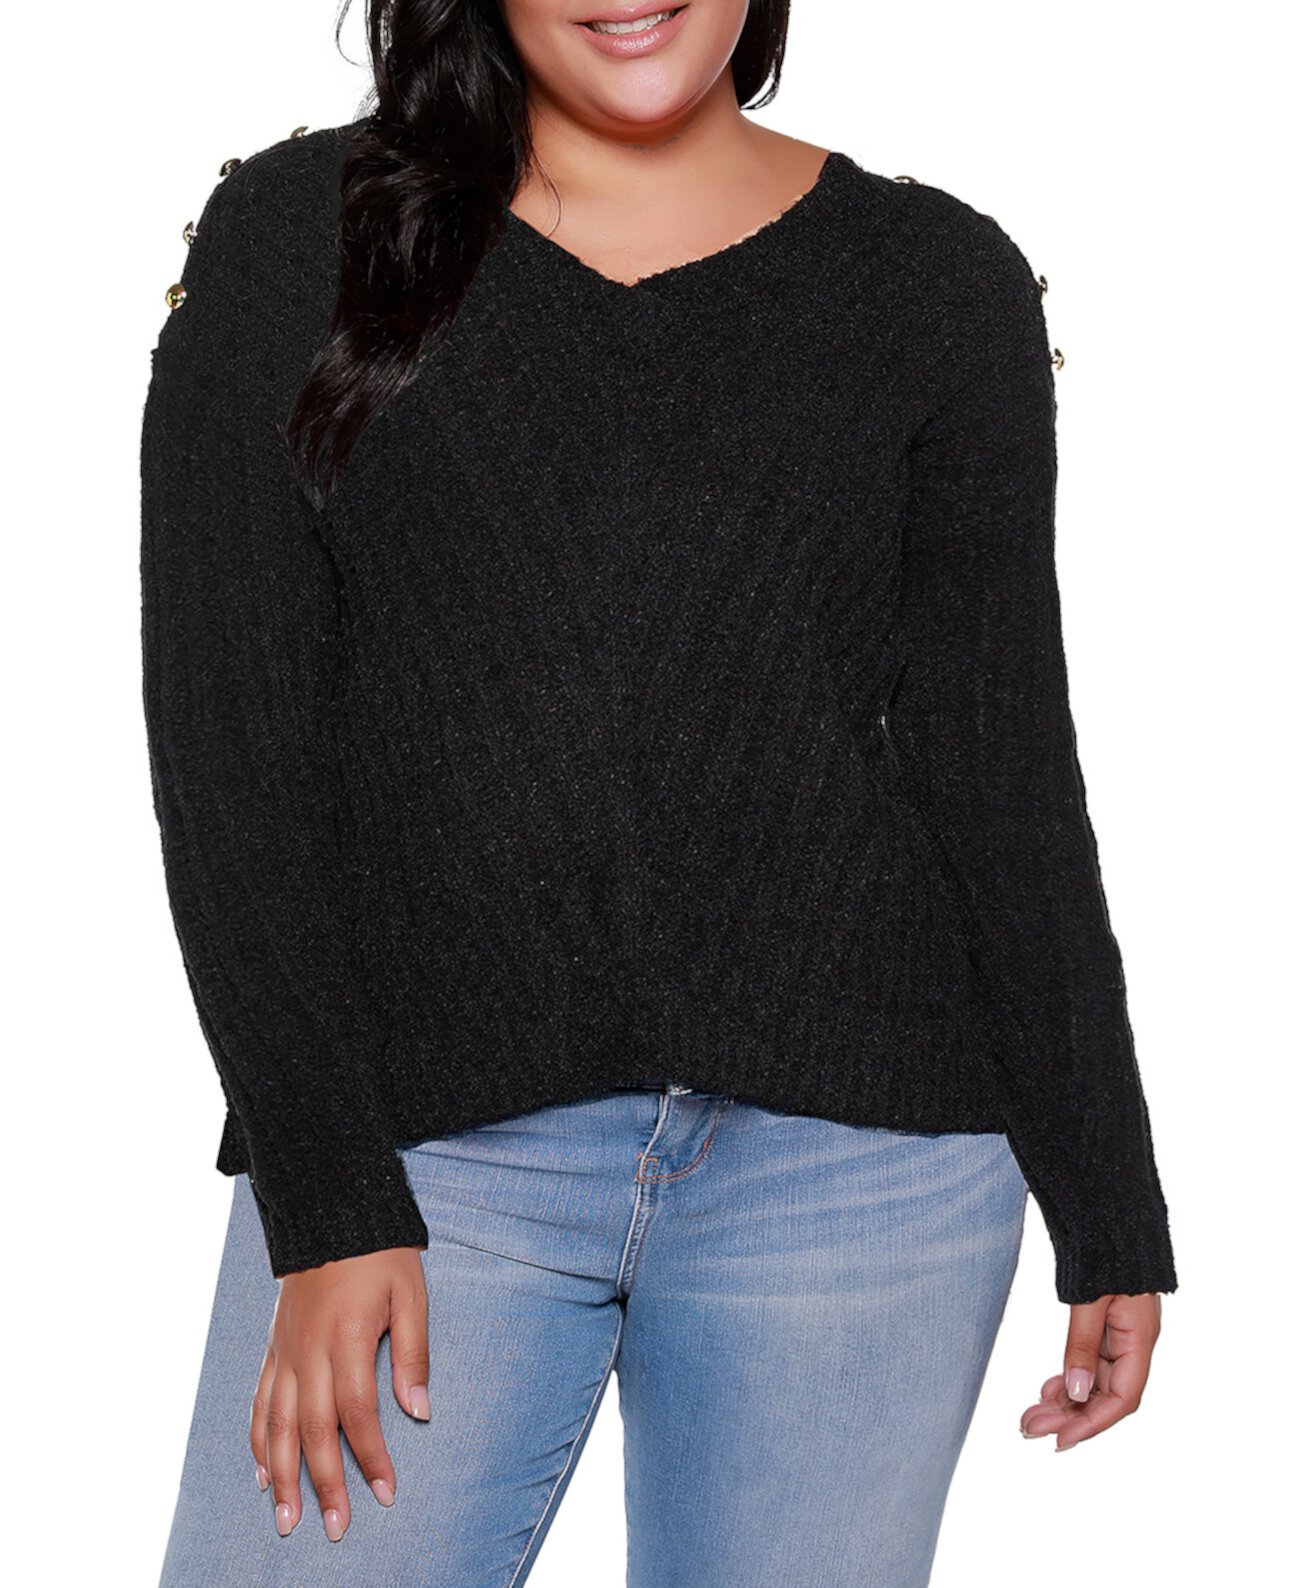 Вязаный свитер большого размера с V-образным вырезом в рубчик и украшением Black Label Belldini